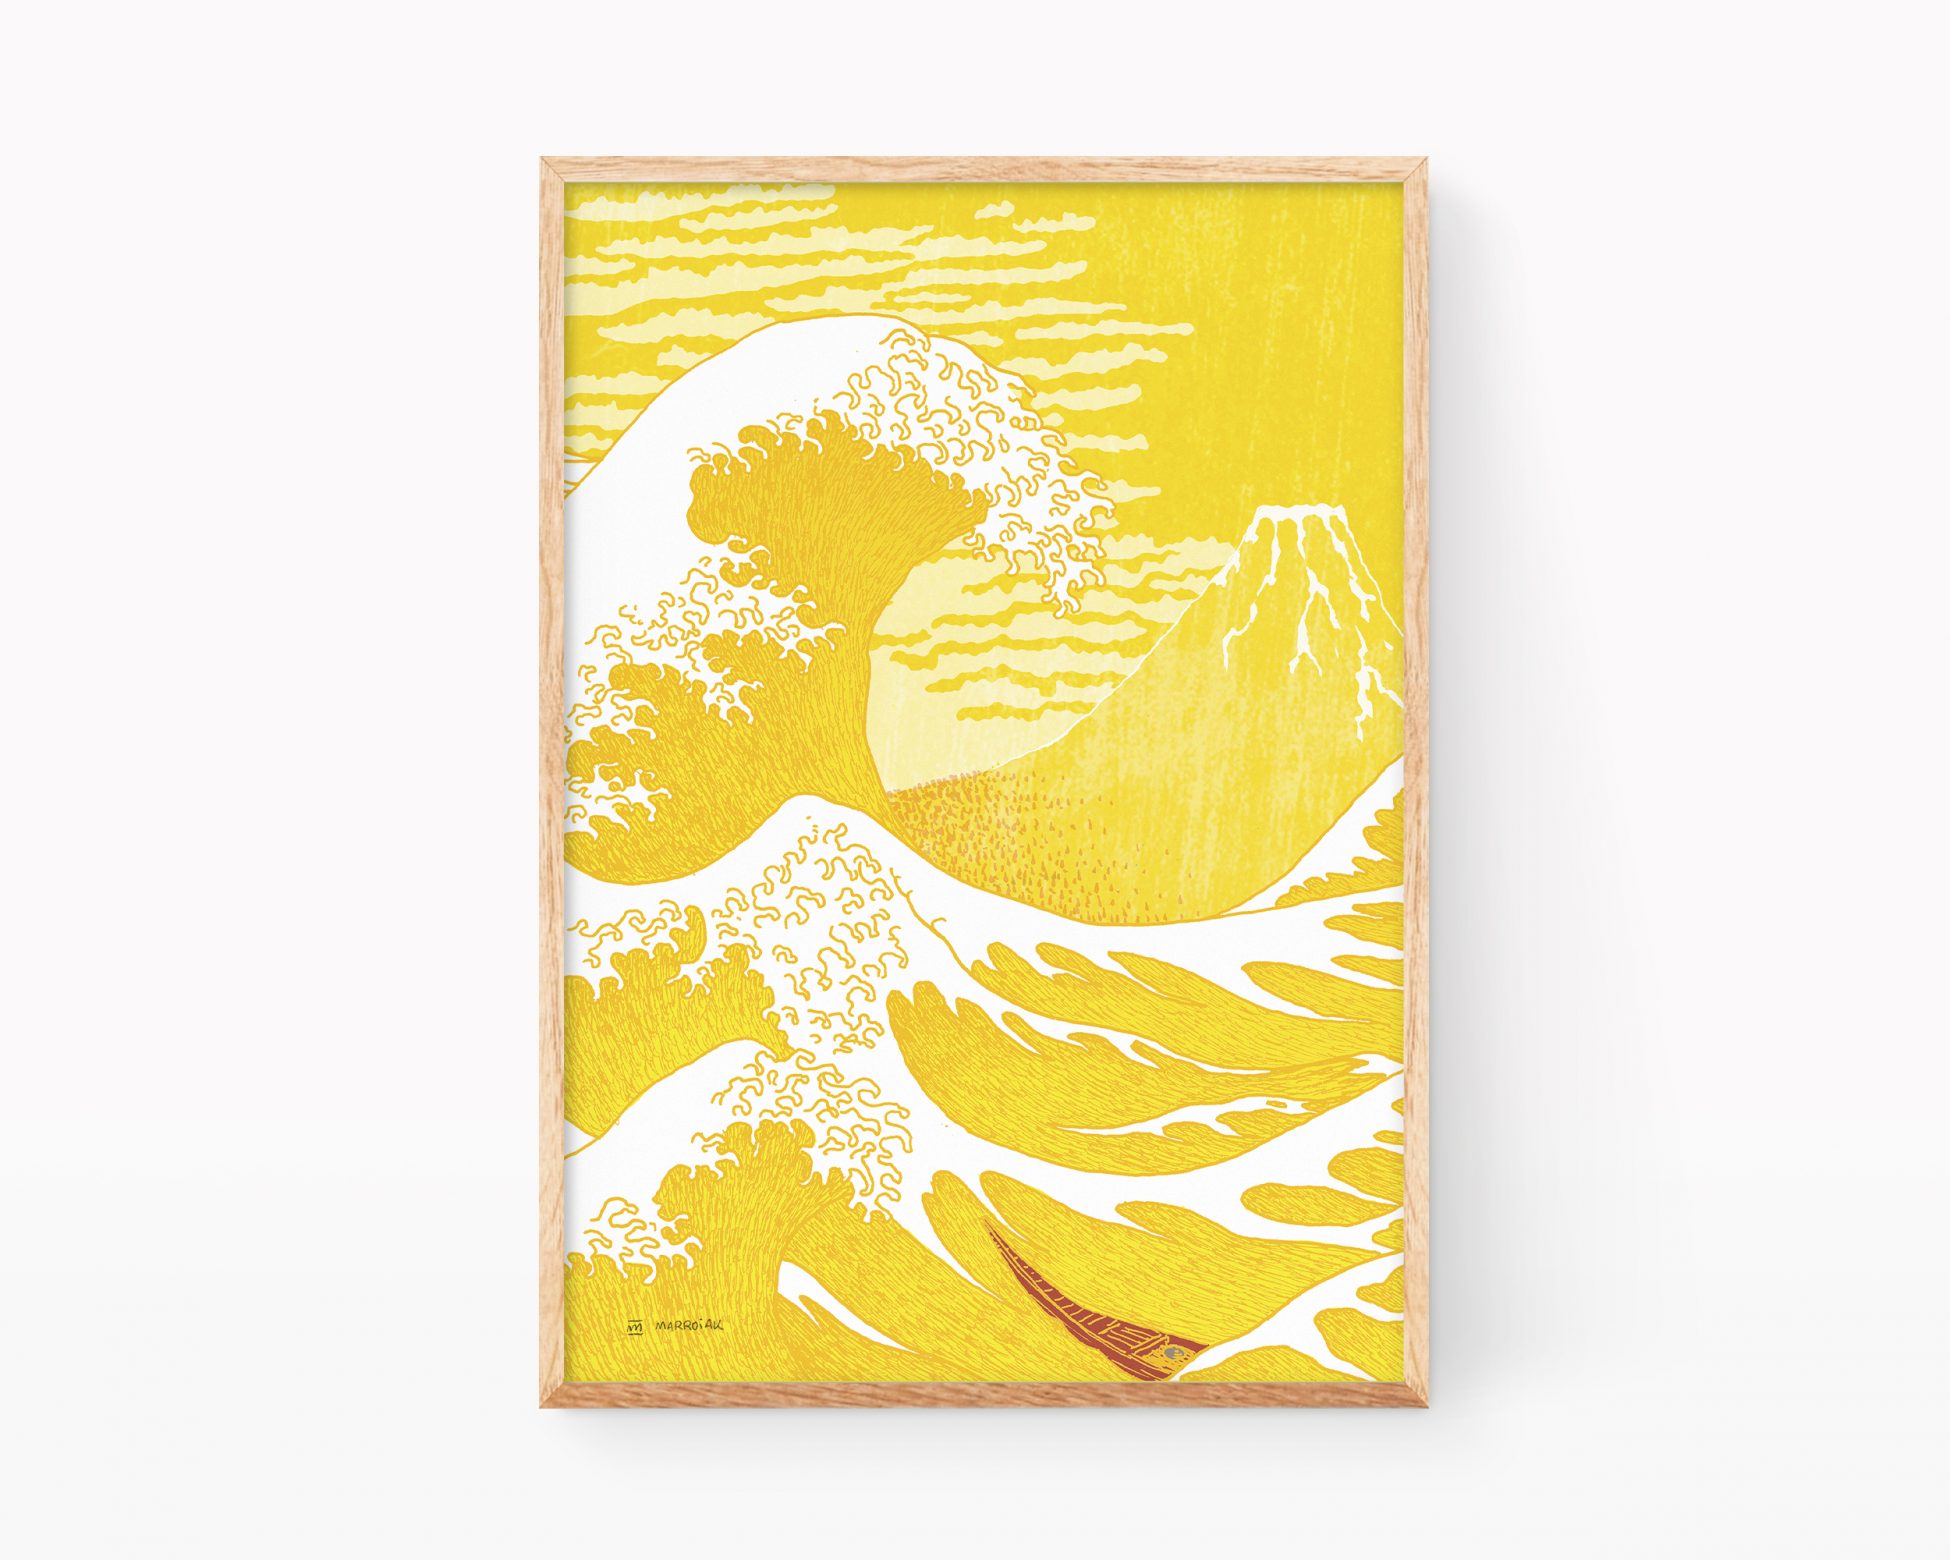 Ilustración La Gran ola y el Fuji Rojo de Katsushika Hokusai. Cuadro decorativo para enmarcar con una print que mezcla los dibujos de La gran ola de kanagawa con el Fuji Rojo, obras maestras de la estampación japonesa (ukiyo-e). Versión amarillo y mostaza.